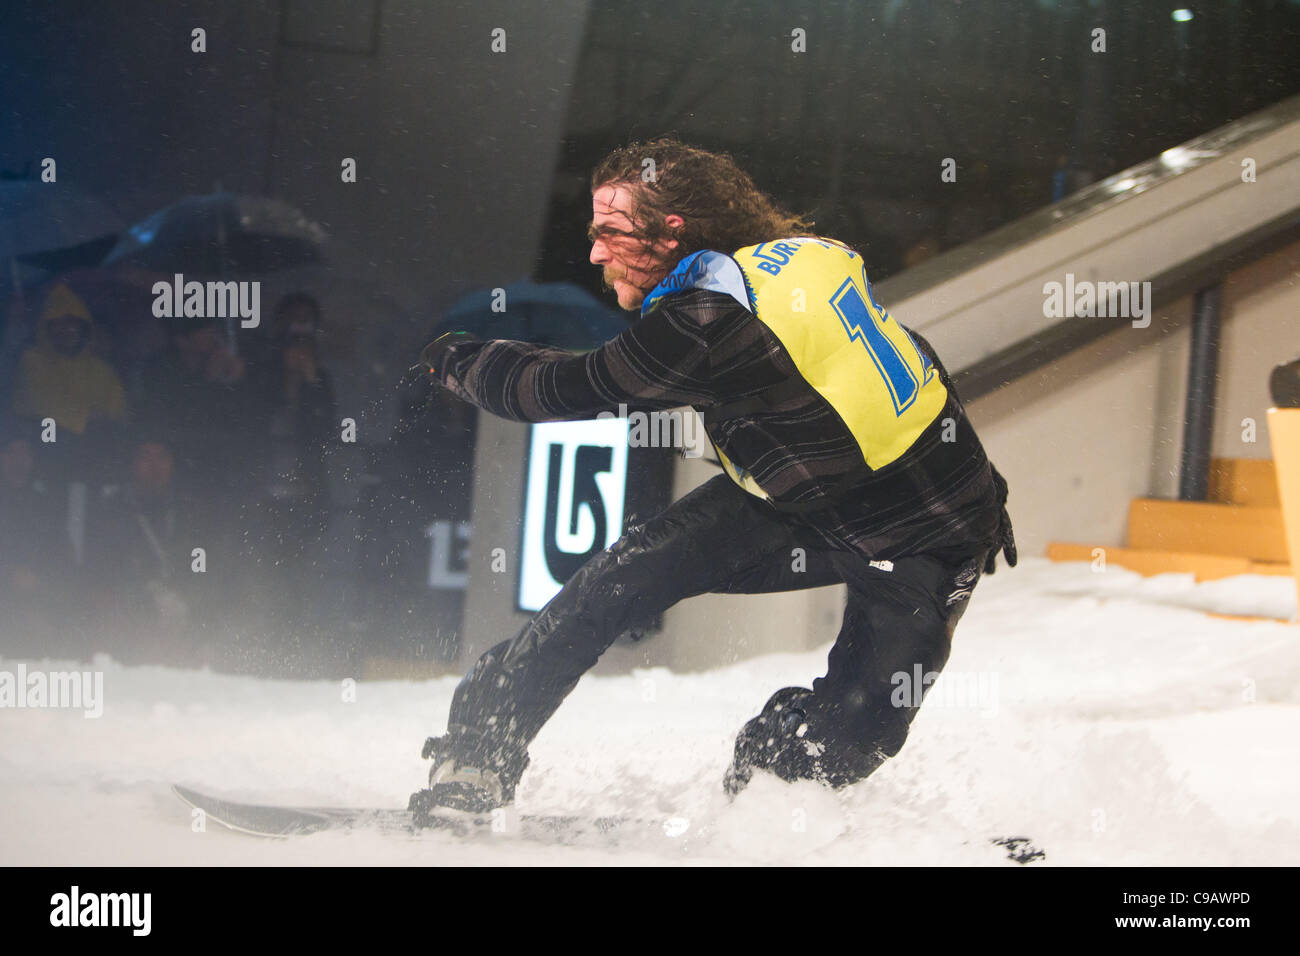 El 19 de noviembre de 2011, Tokio, Japón - El Snowboarder Zac Marben (USA) tiene un aterrizaje inestable durante el 'Burton Rail días presentado por MINI' evento de snowboard en Roppongi Hills Arena. (Foto por Christopher Jue/AFLO) Foto de stock